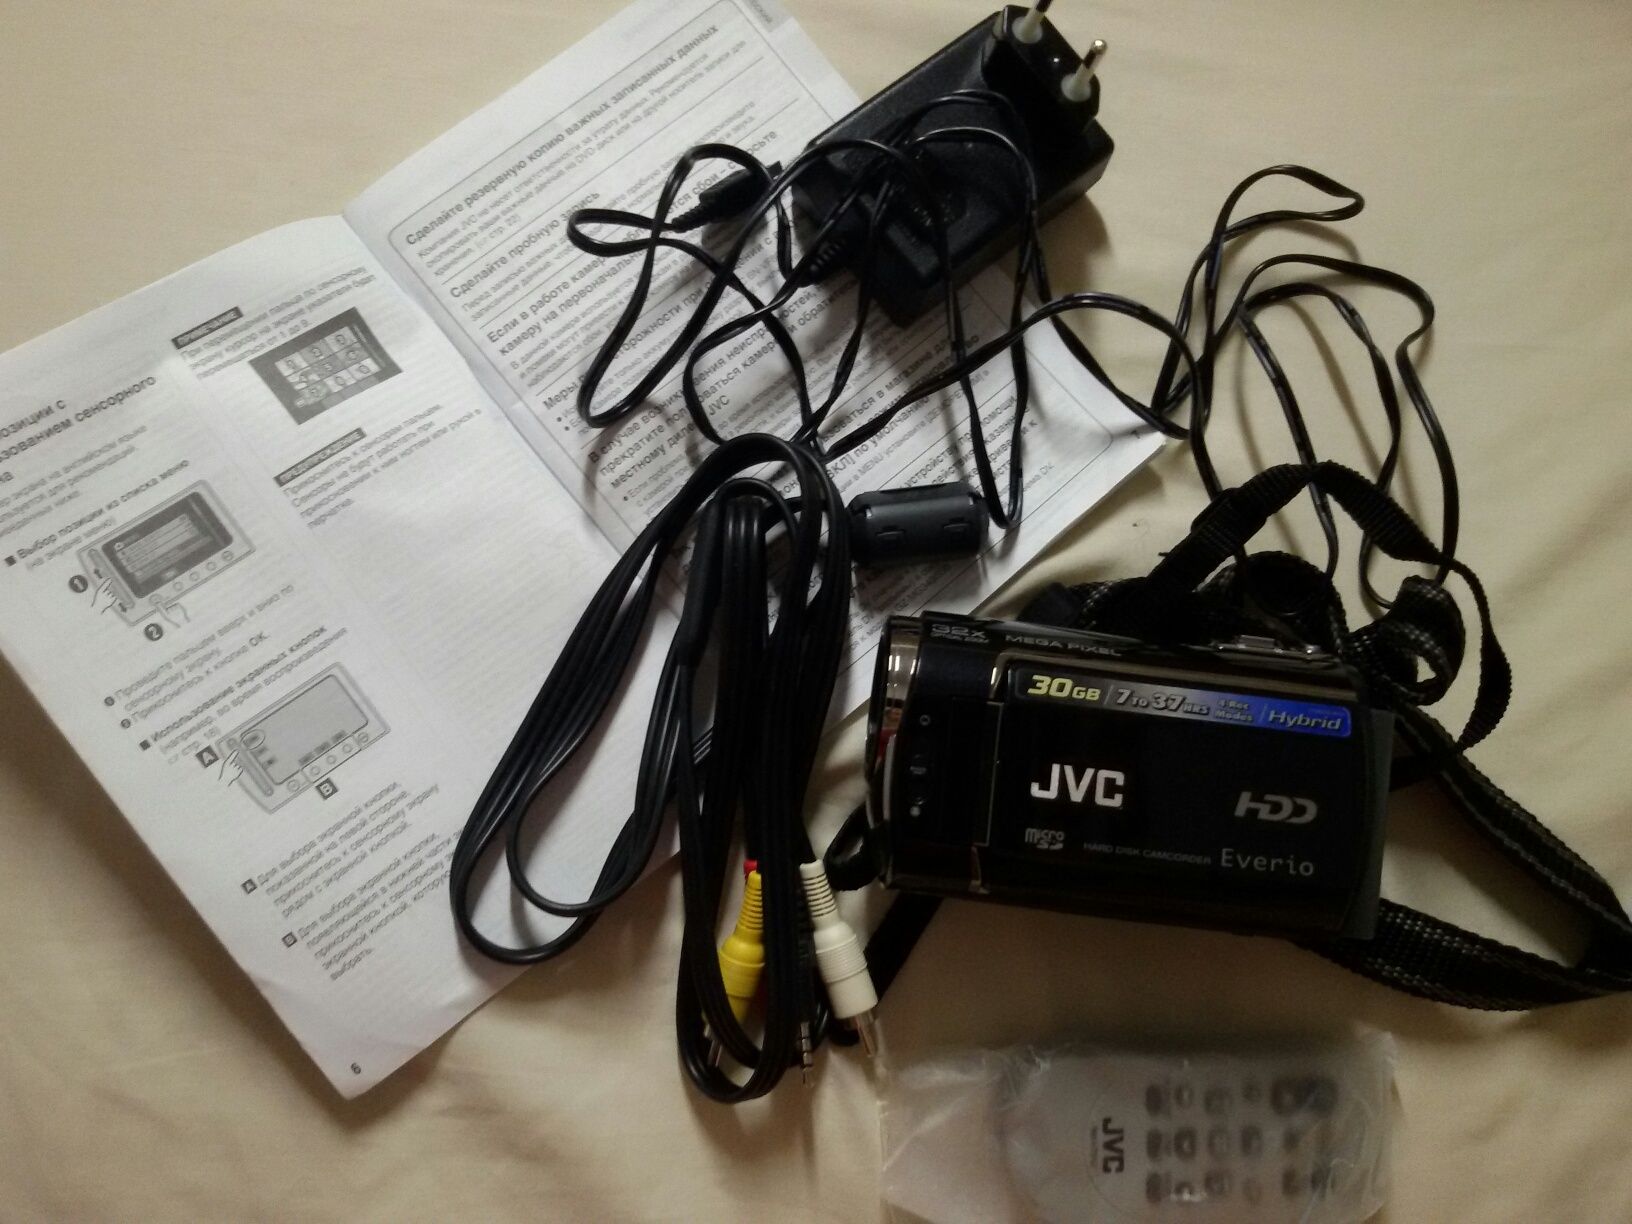 Цифровая видеокамера jvc gz-mg 430 с HDD 30 Гб